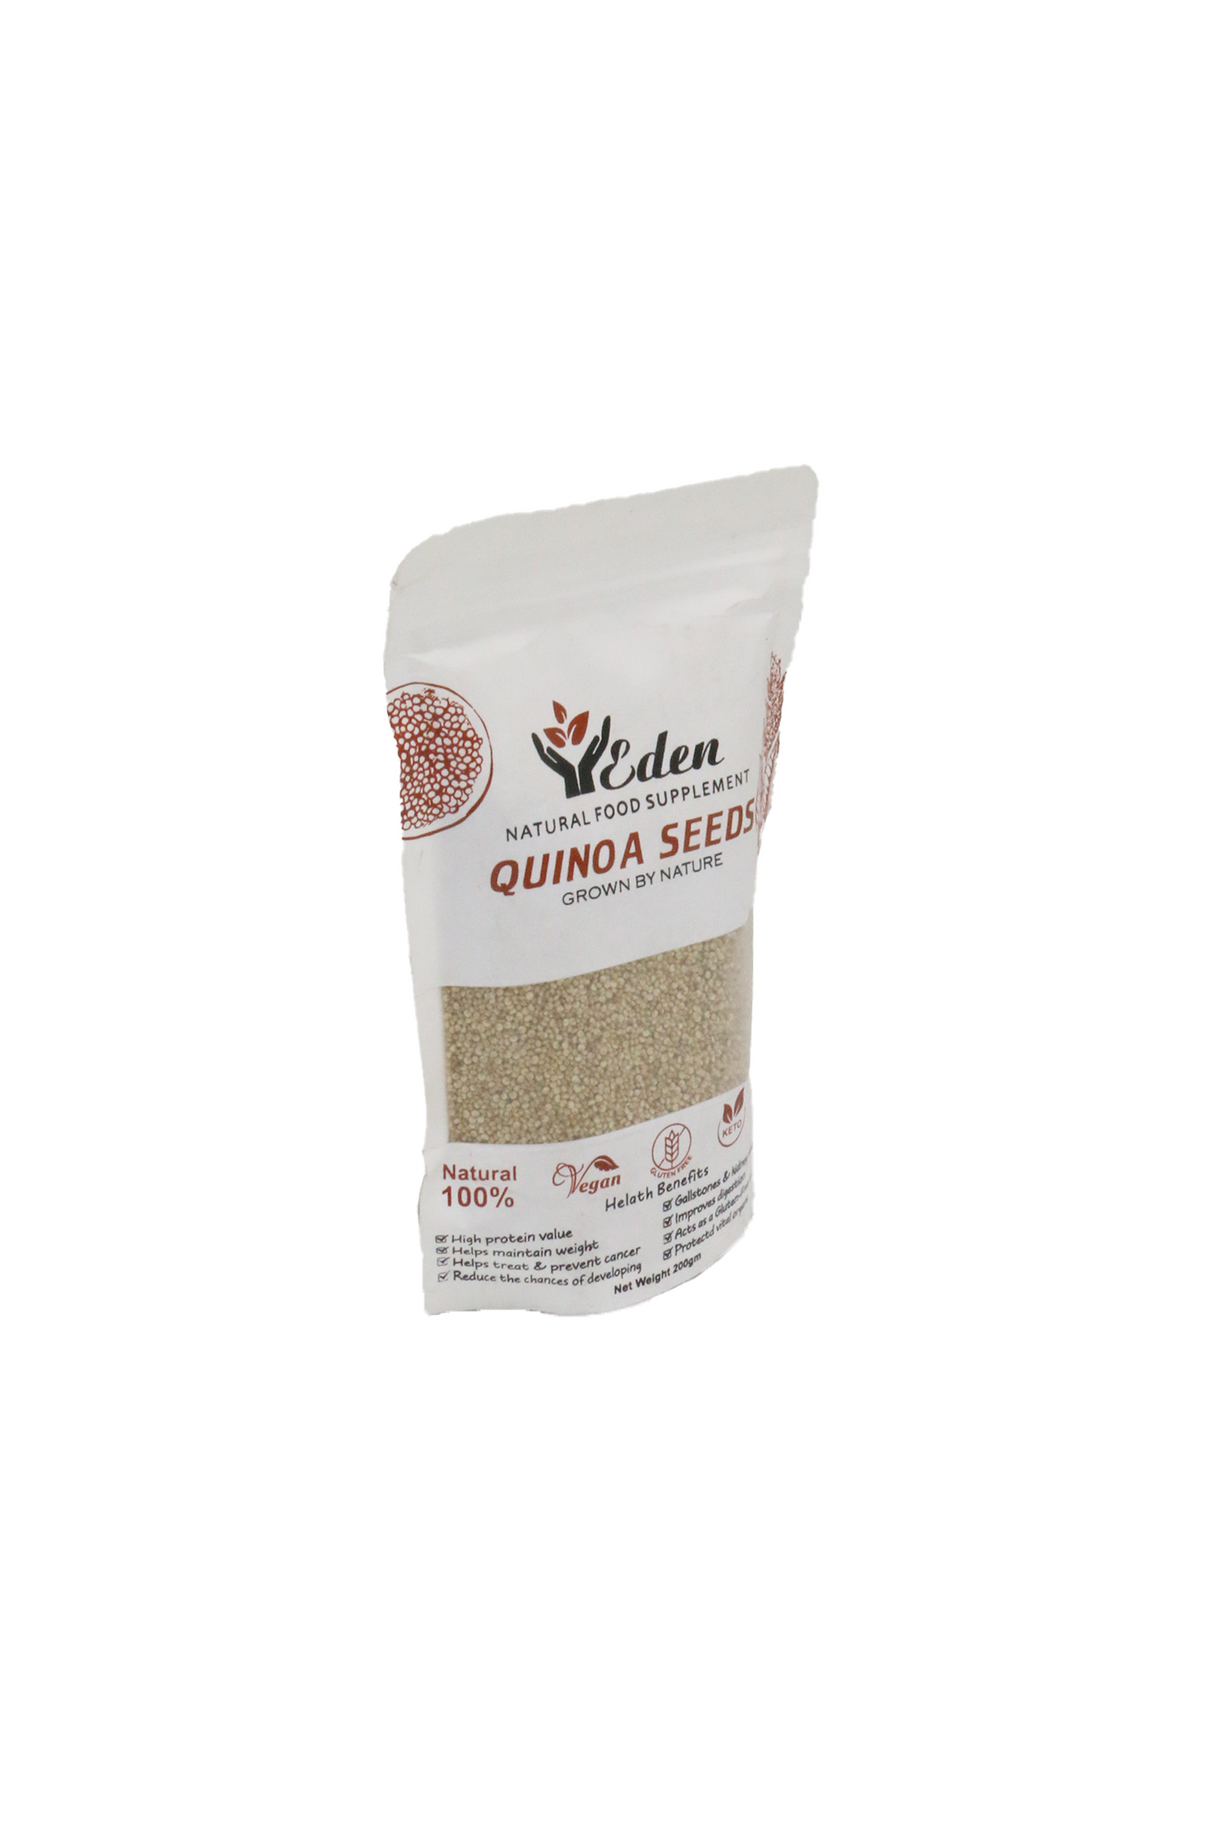 eden quinoa seeds 200g